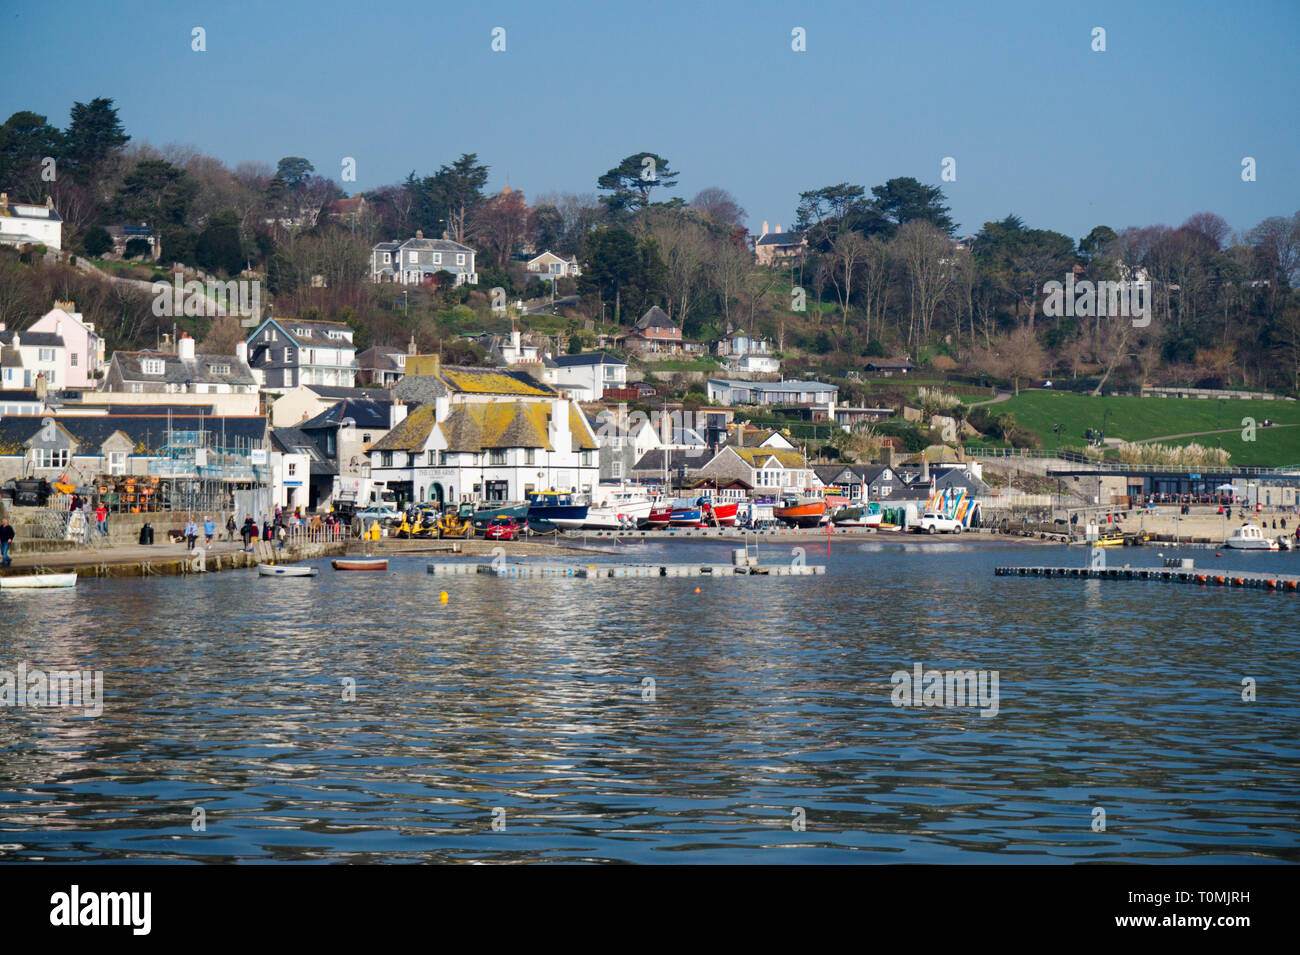 Scenic view of Lyme Regis Harbor, Dorset England UK Stock Photo